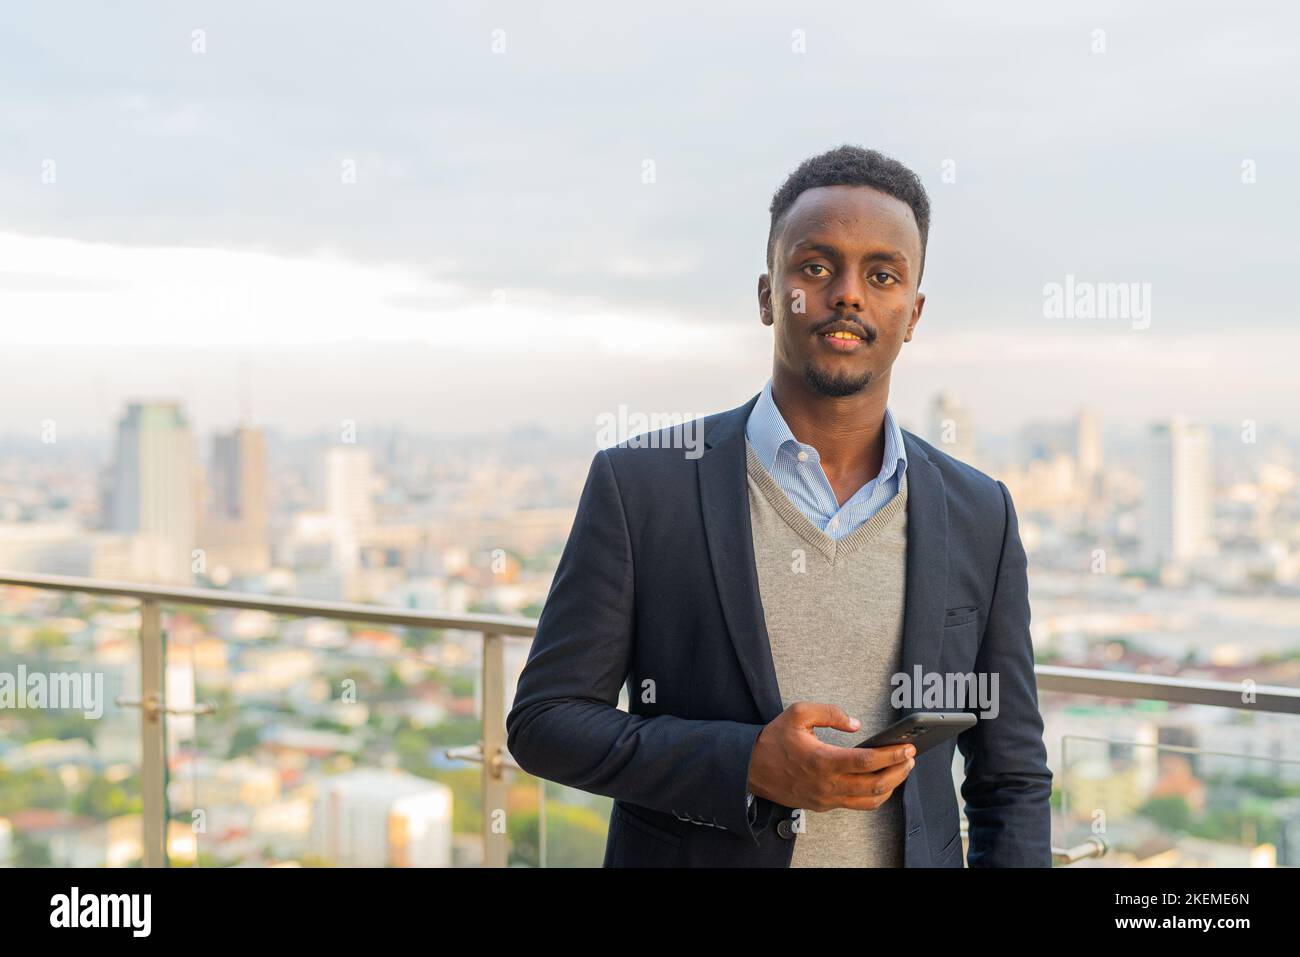 Ritratto di bell'uomo d'affari africano nero che indossa la tuta e tiene in mano uno smartphone Foto Stock